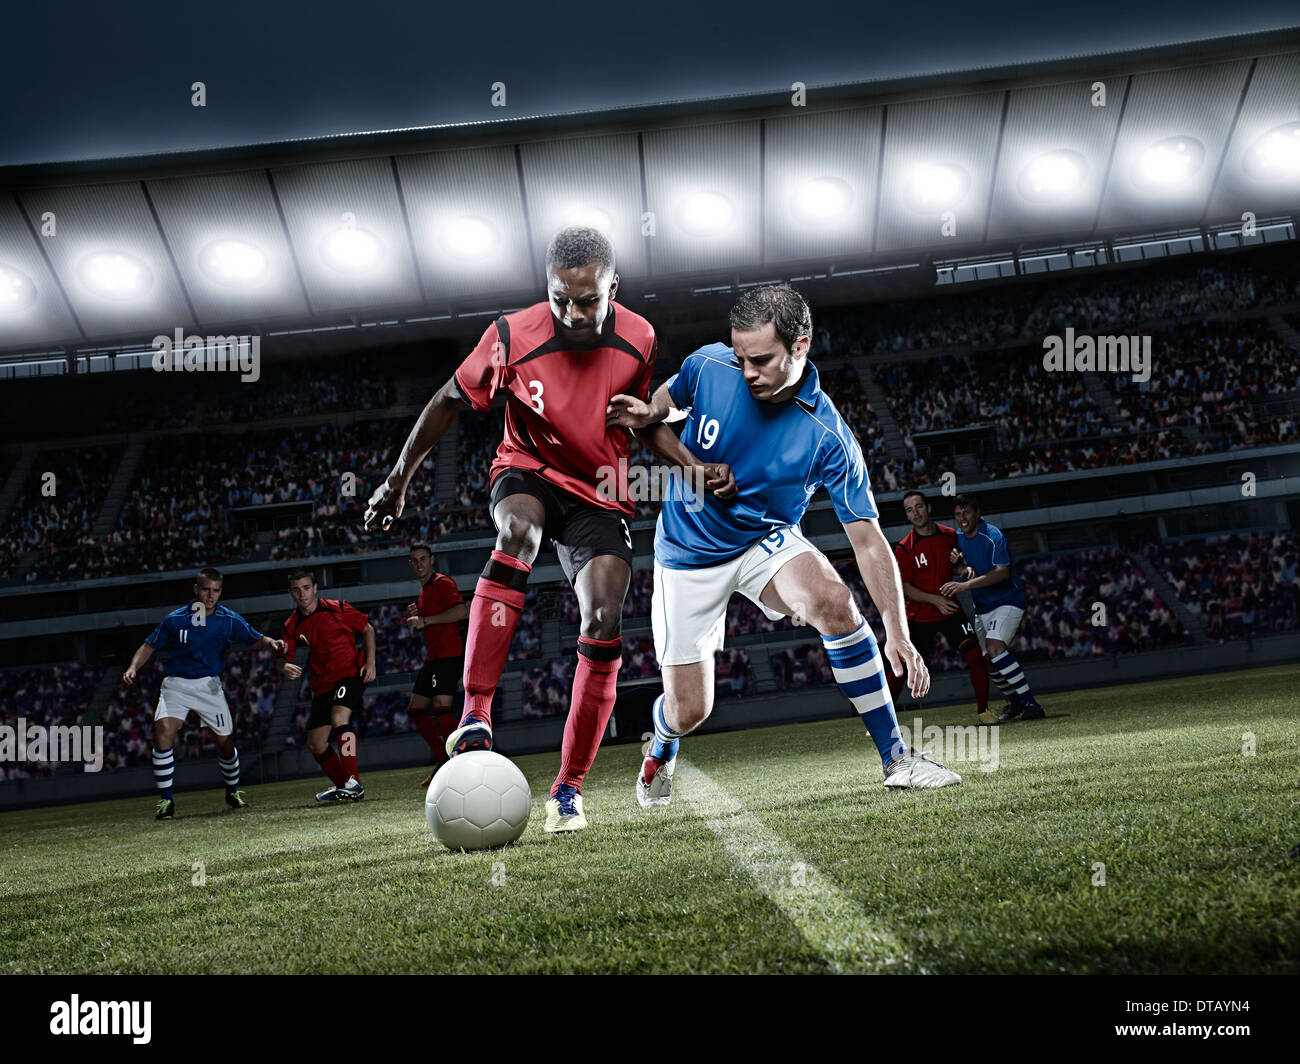 Fußball-Spieler jagen Ball auf Feld Stockfoto